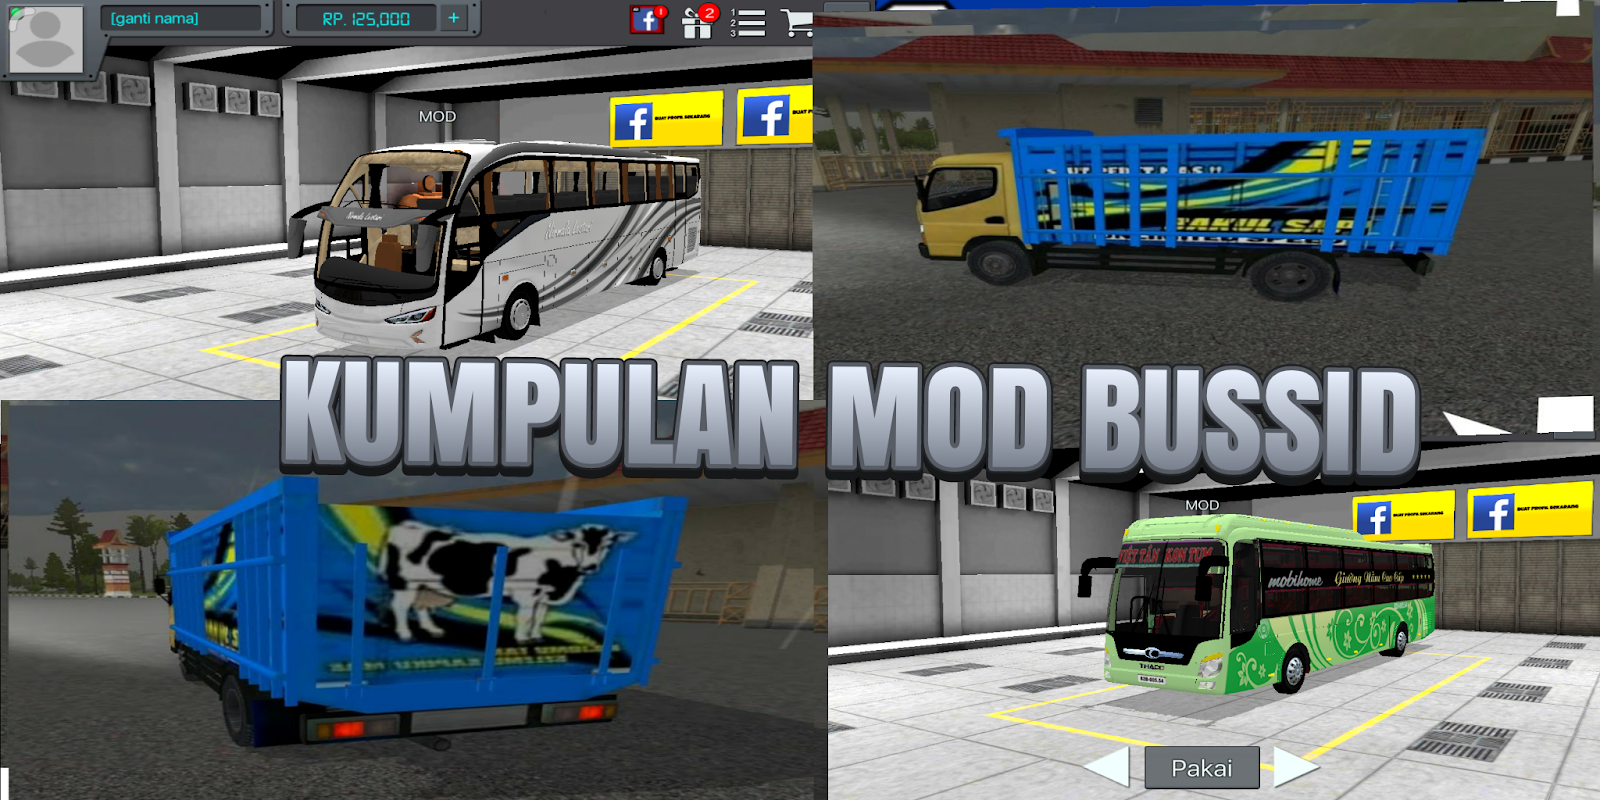 Kumpulan Mod Bussid Terbaru Part 1 - Semua Aja